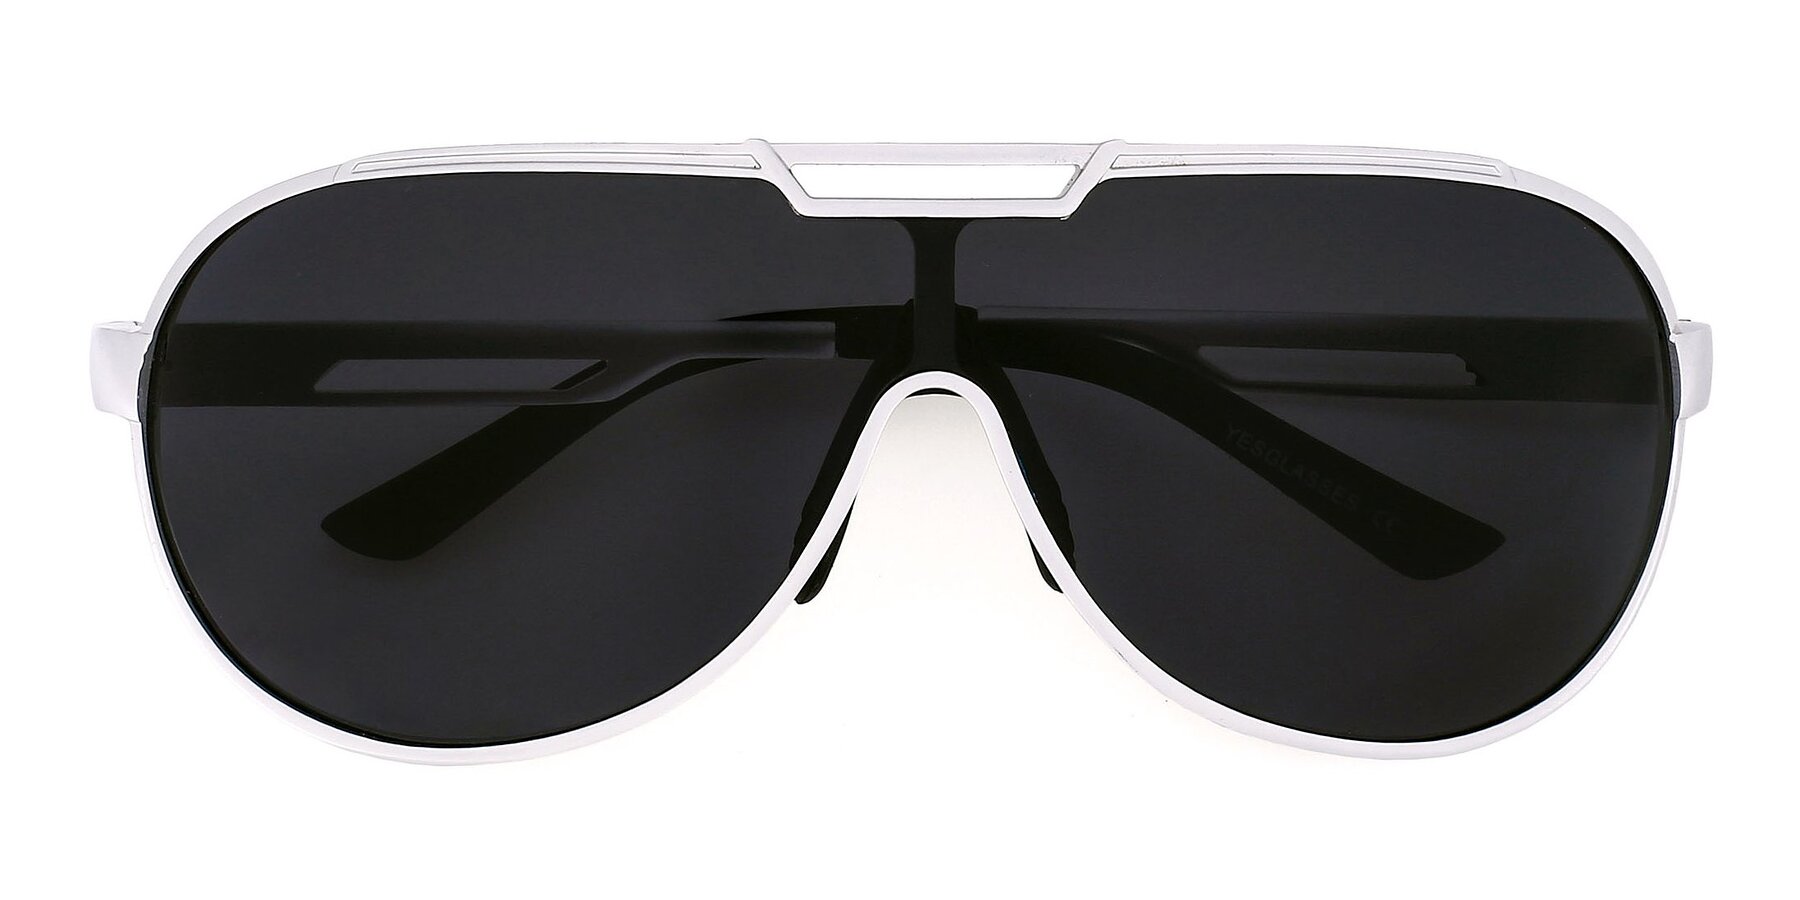 Silver Wide Shield Aviator Polarized Sunglasses with Gray Non-Rx Tac Sun Lenses